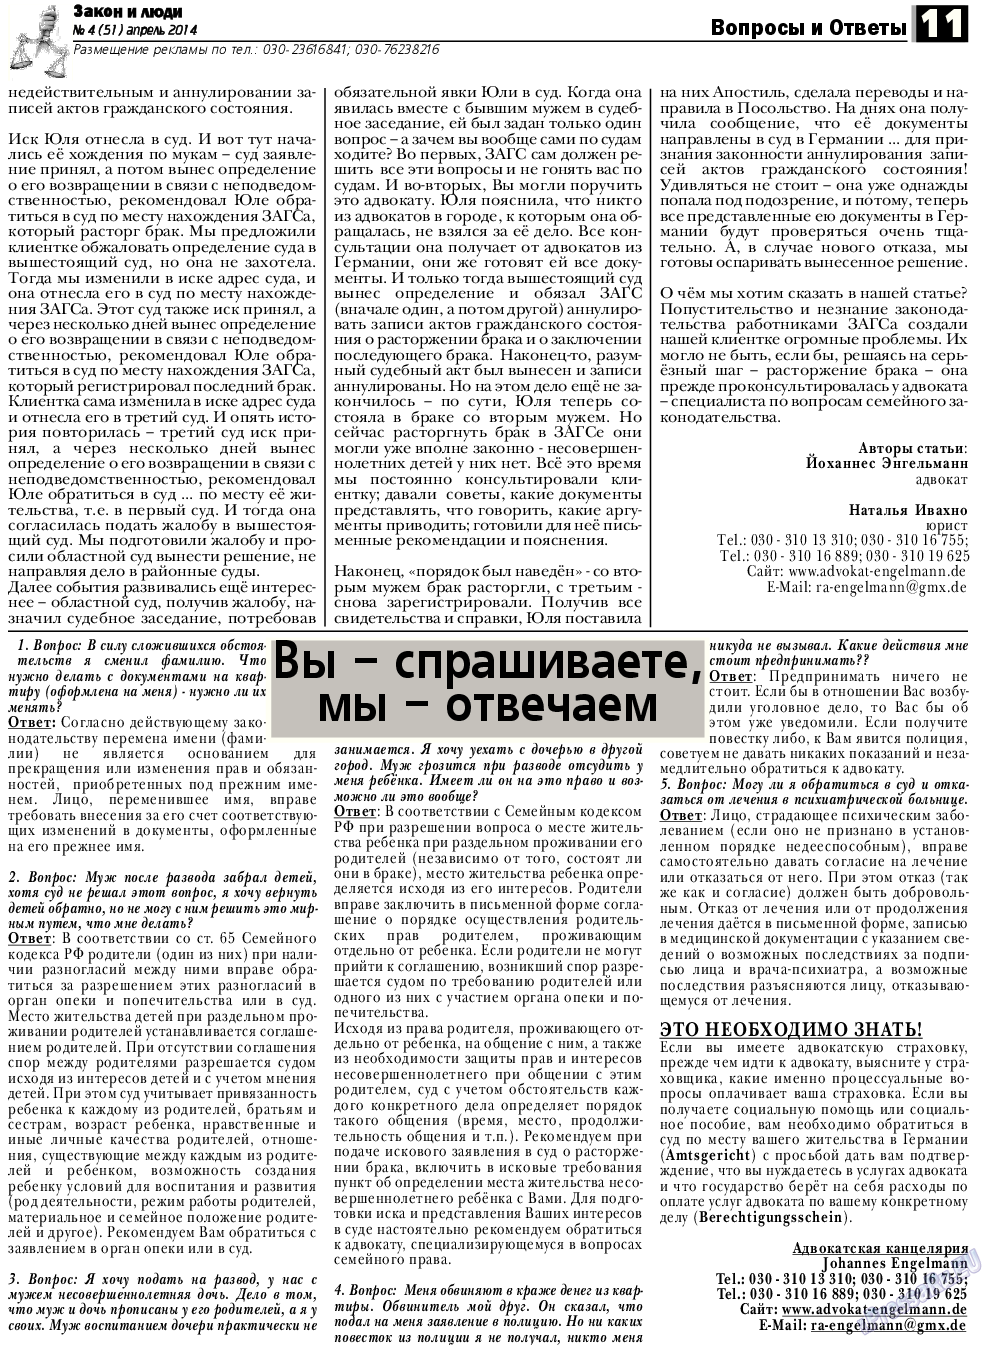 Закон и люди, газета. 2014 №4 стр.11